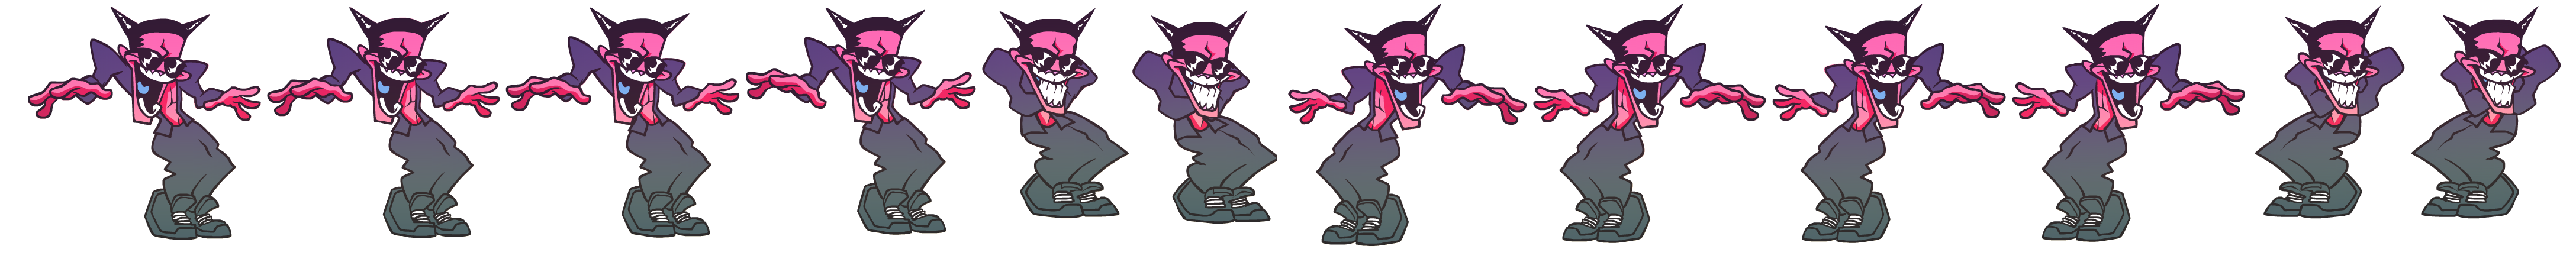 Backup Dancer Demon